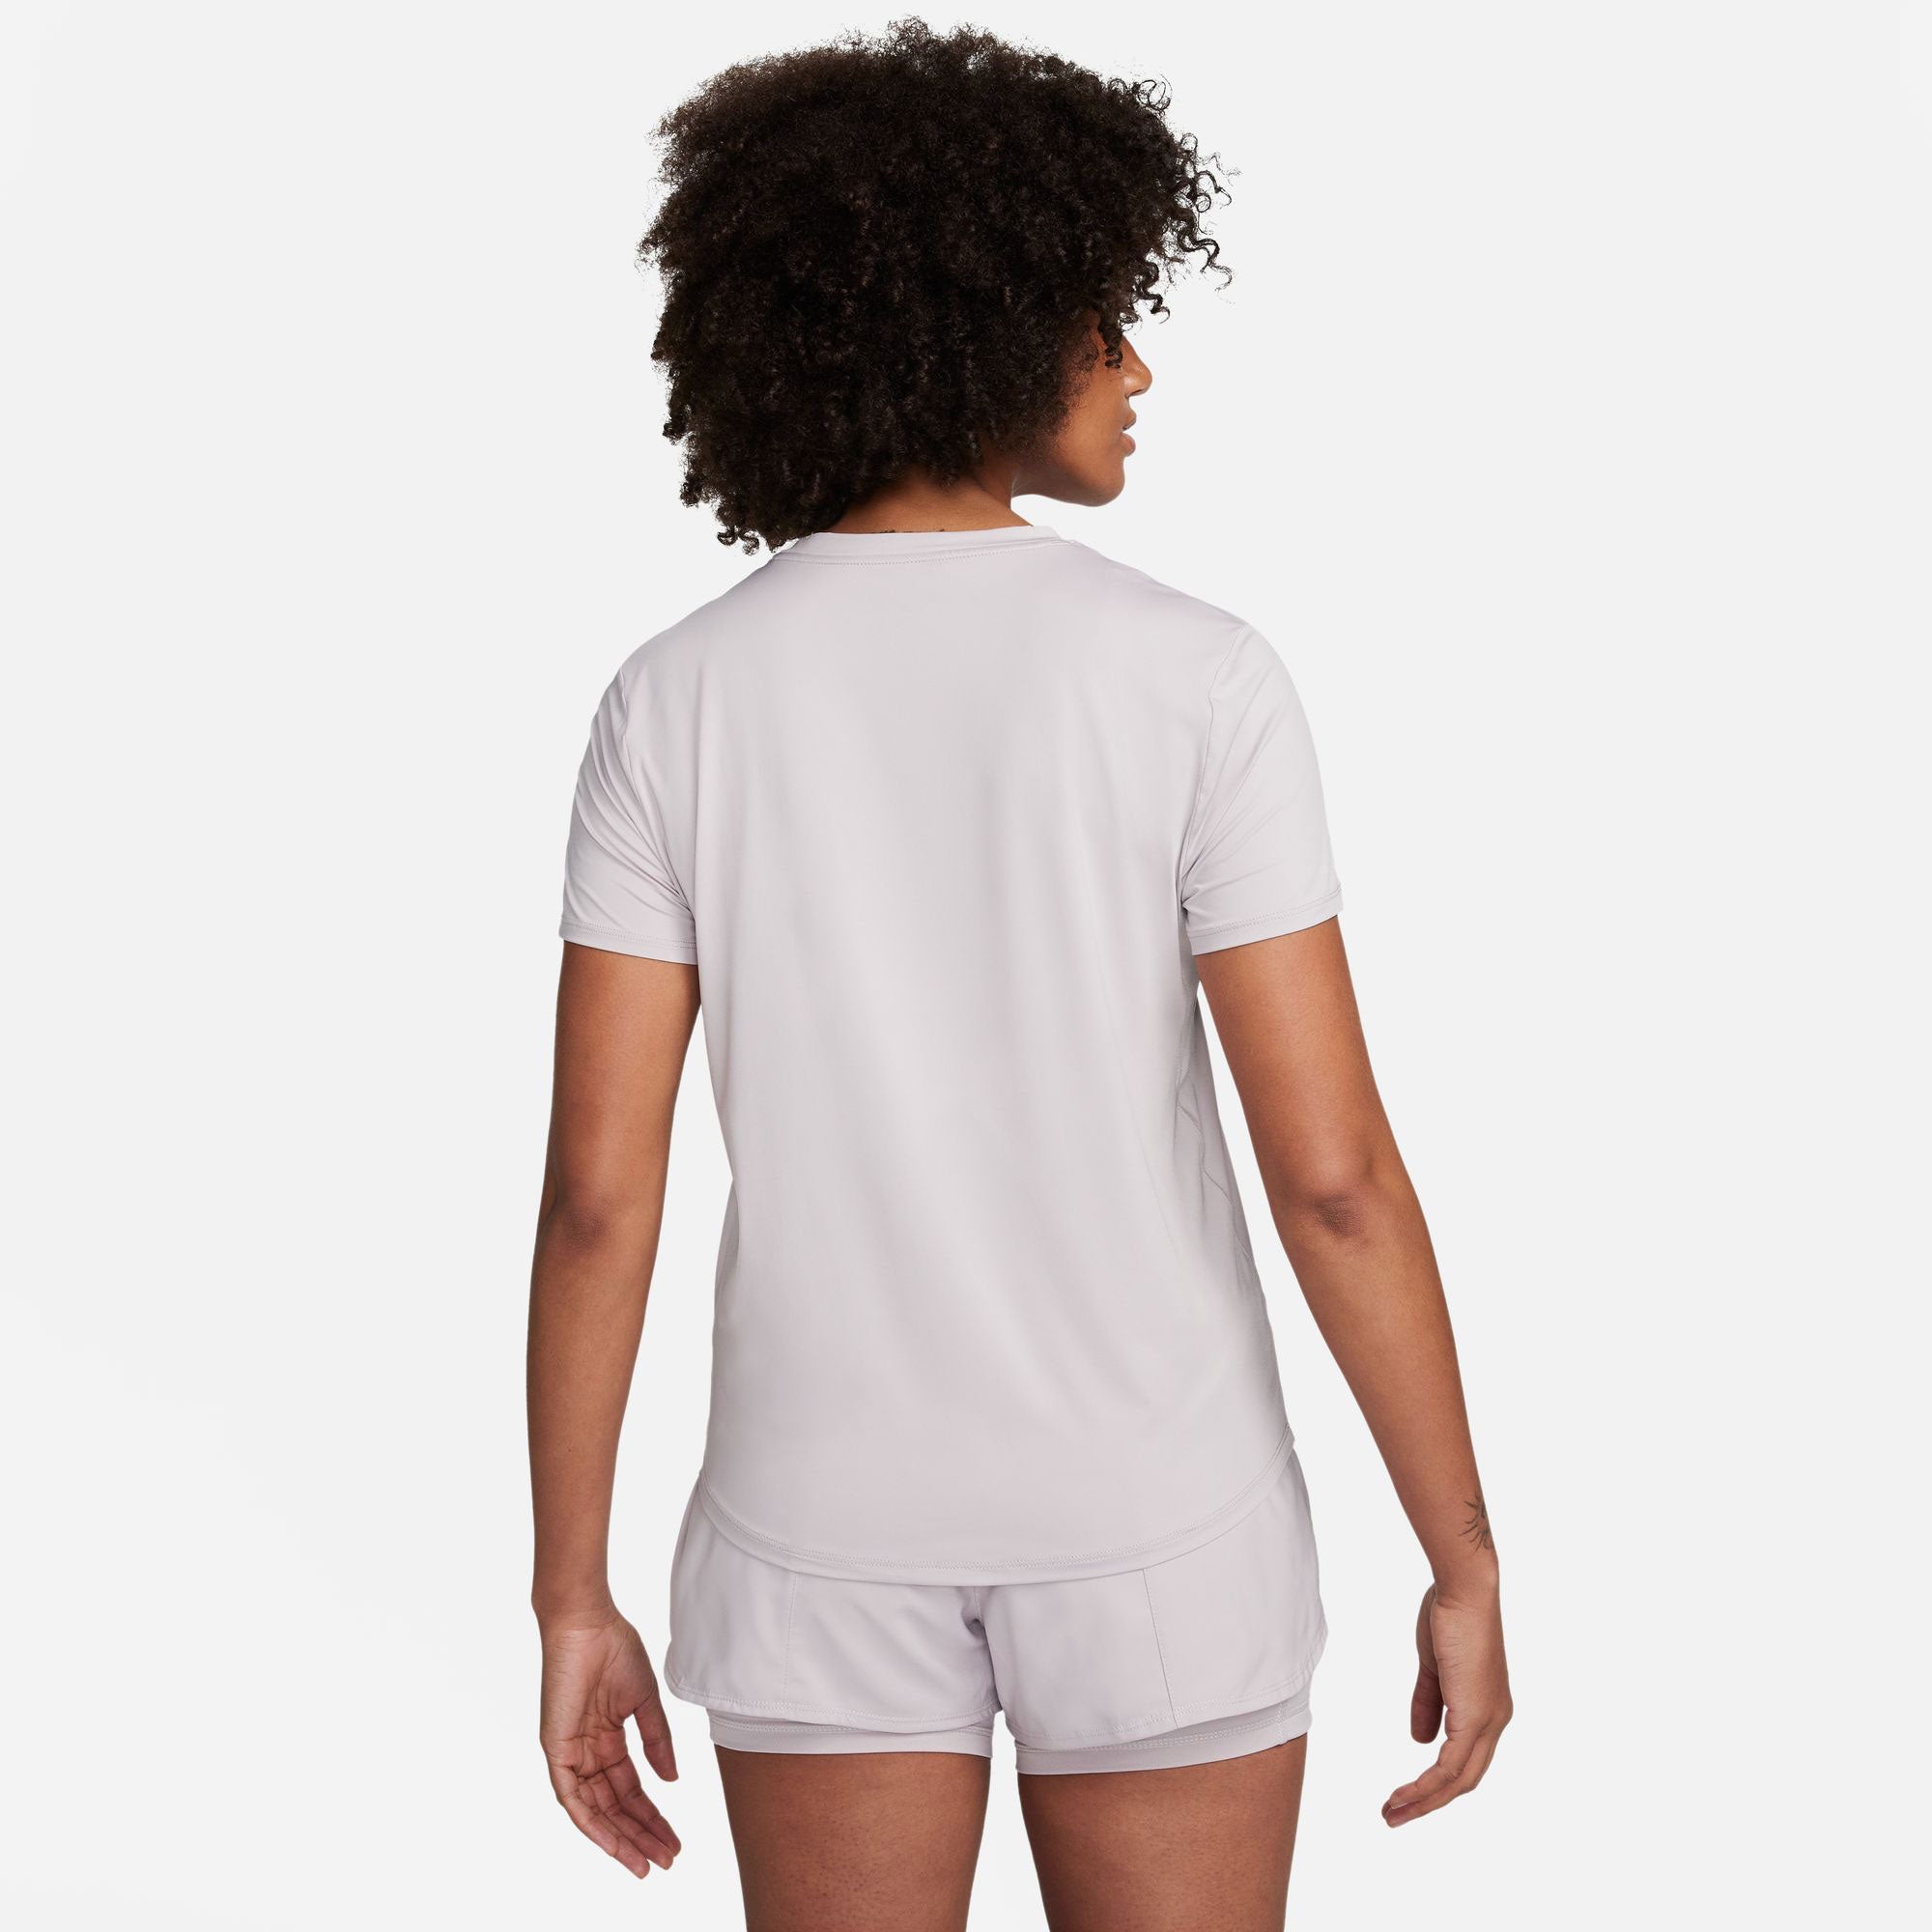 Nike One Classic Women's Dri-FIT Shirt - Grey (2)